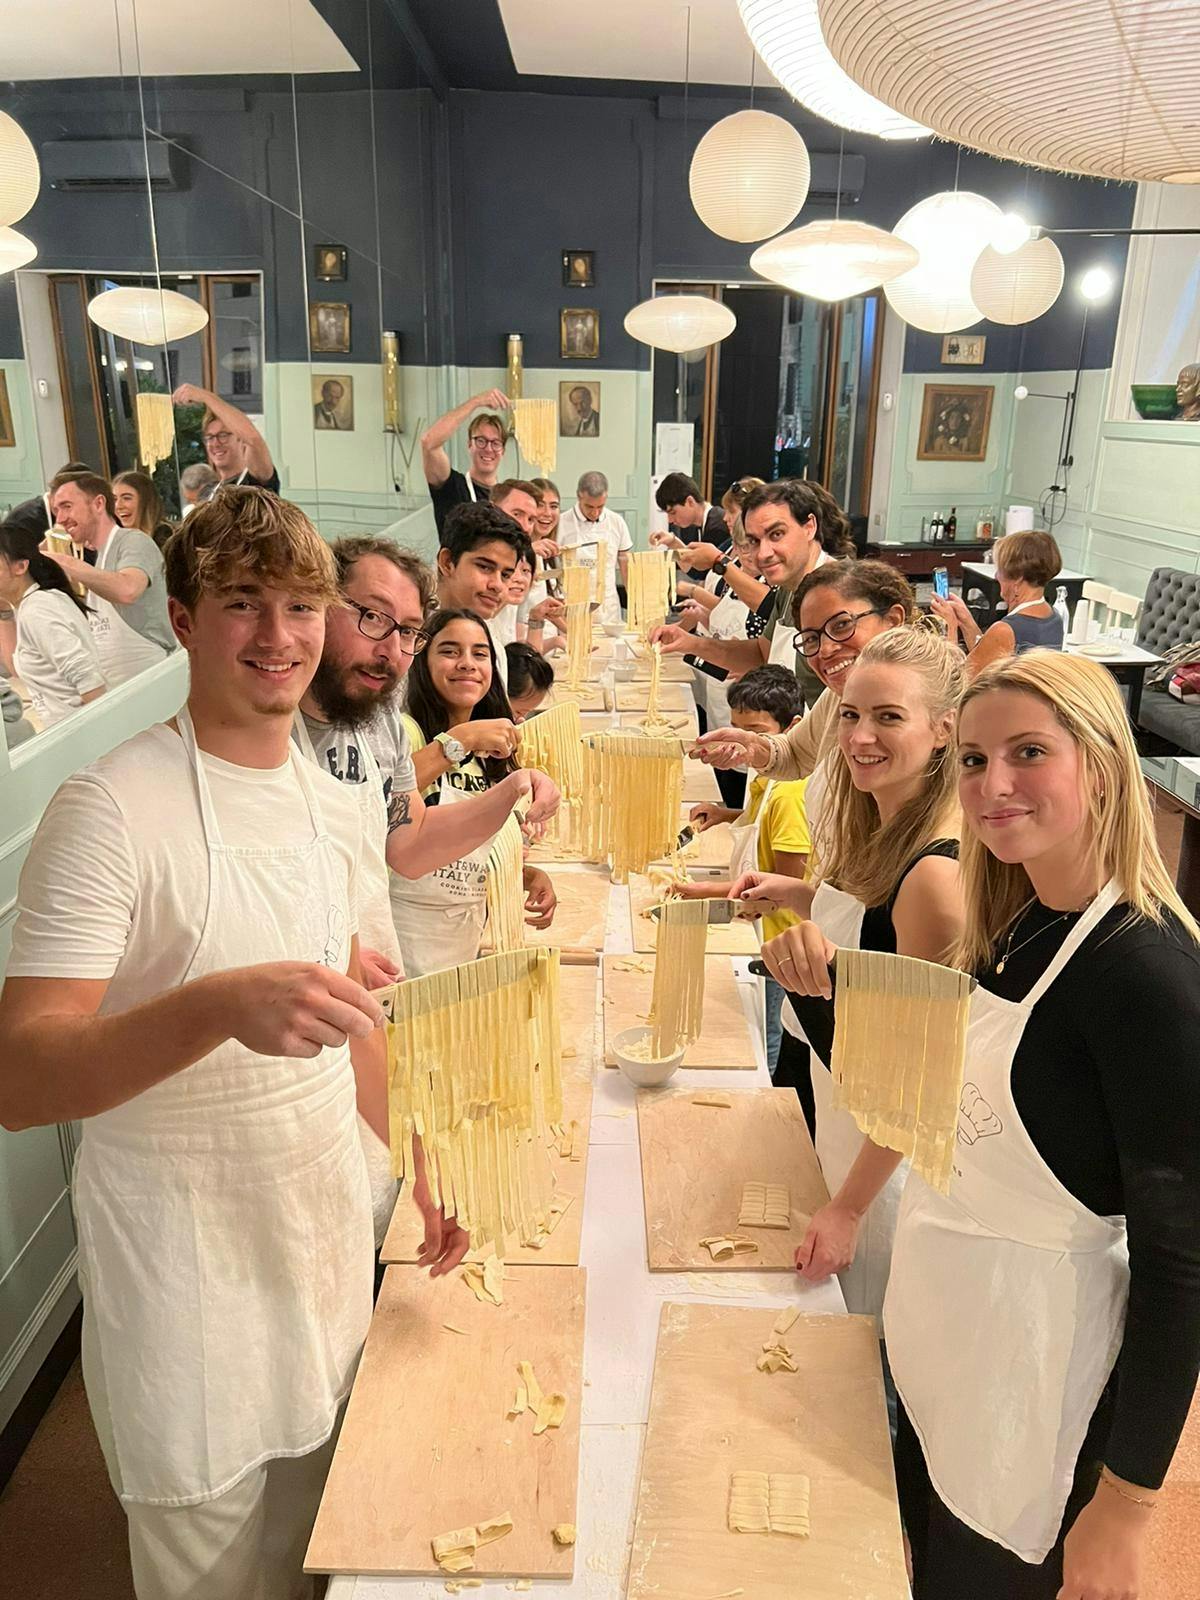 Pasta kookles in Rome